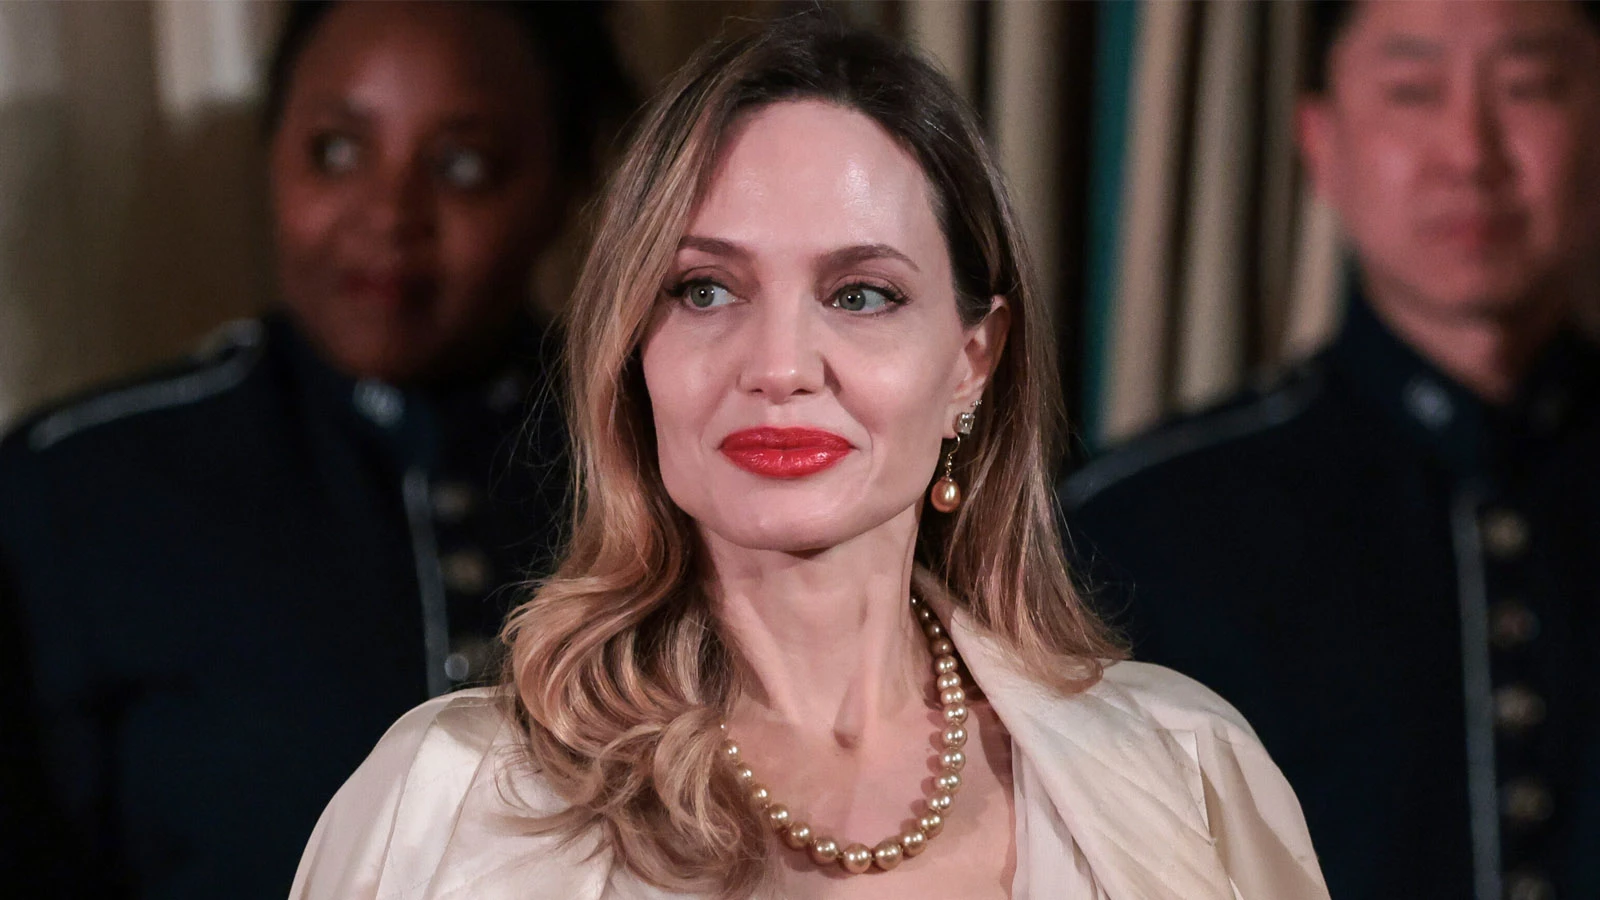 Анджелина Джоли подала против Брэда Питта иск на $ млн из-за винодельни | Forbes Life